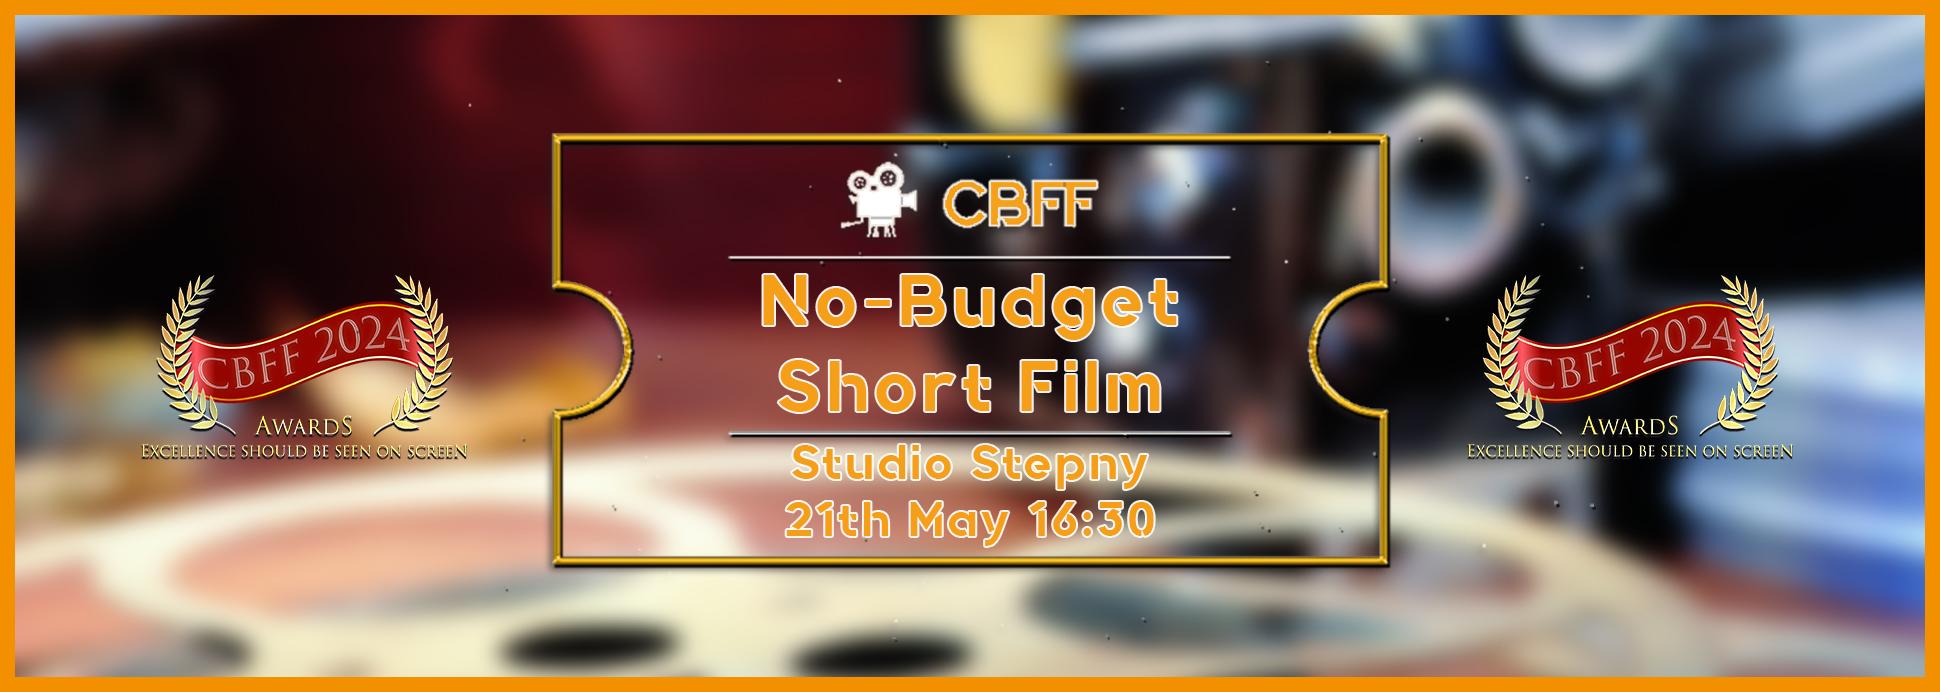 Tuesday 21st 16:30 Studio Stepny No-Budget Shot Film